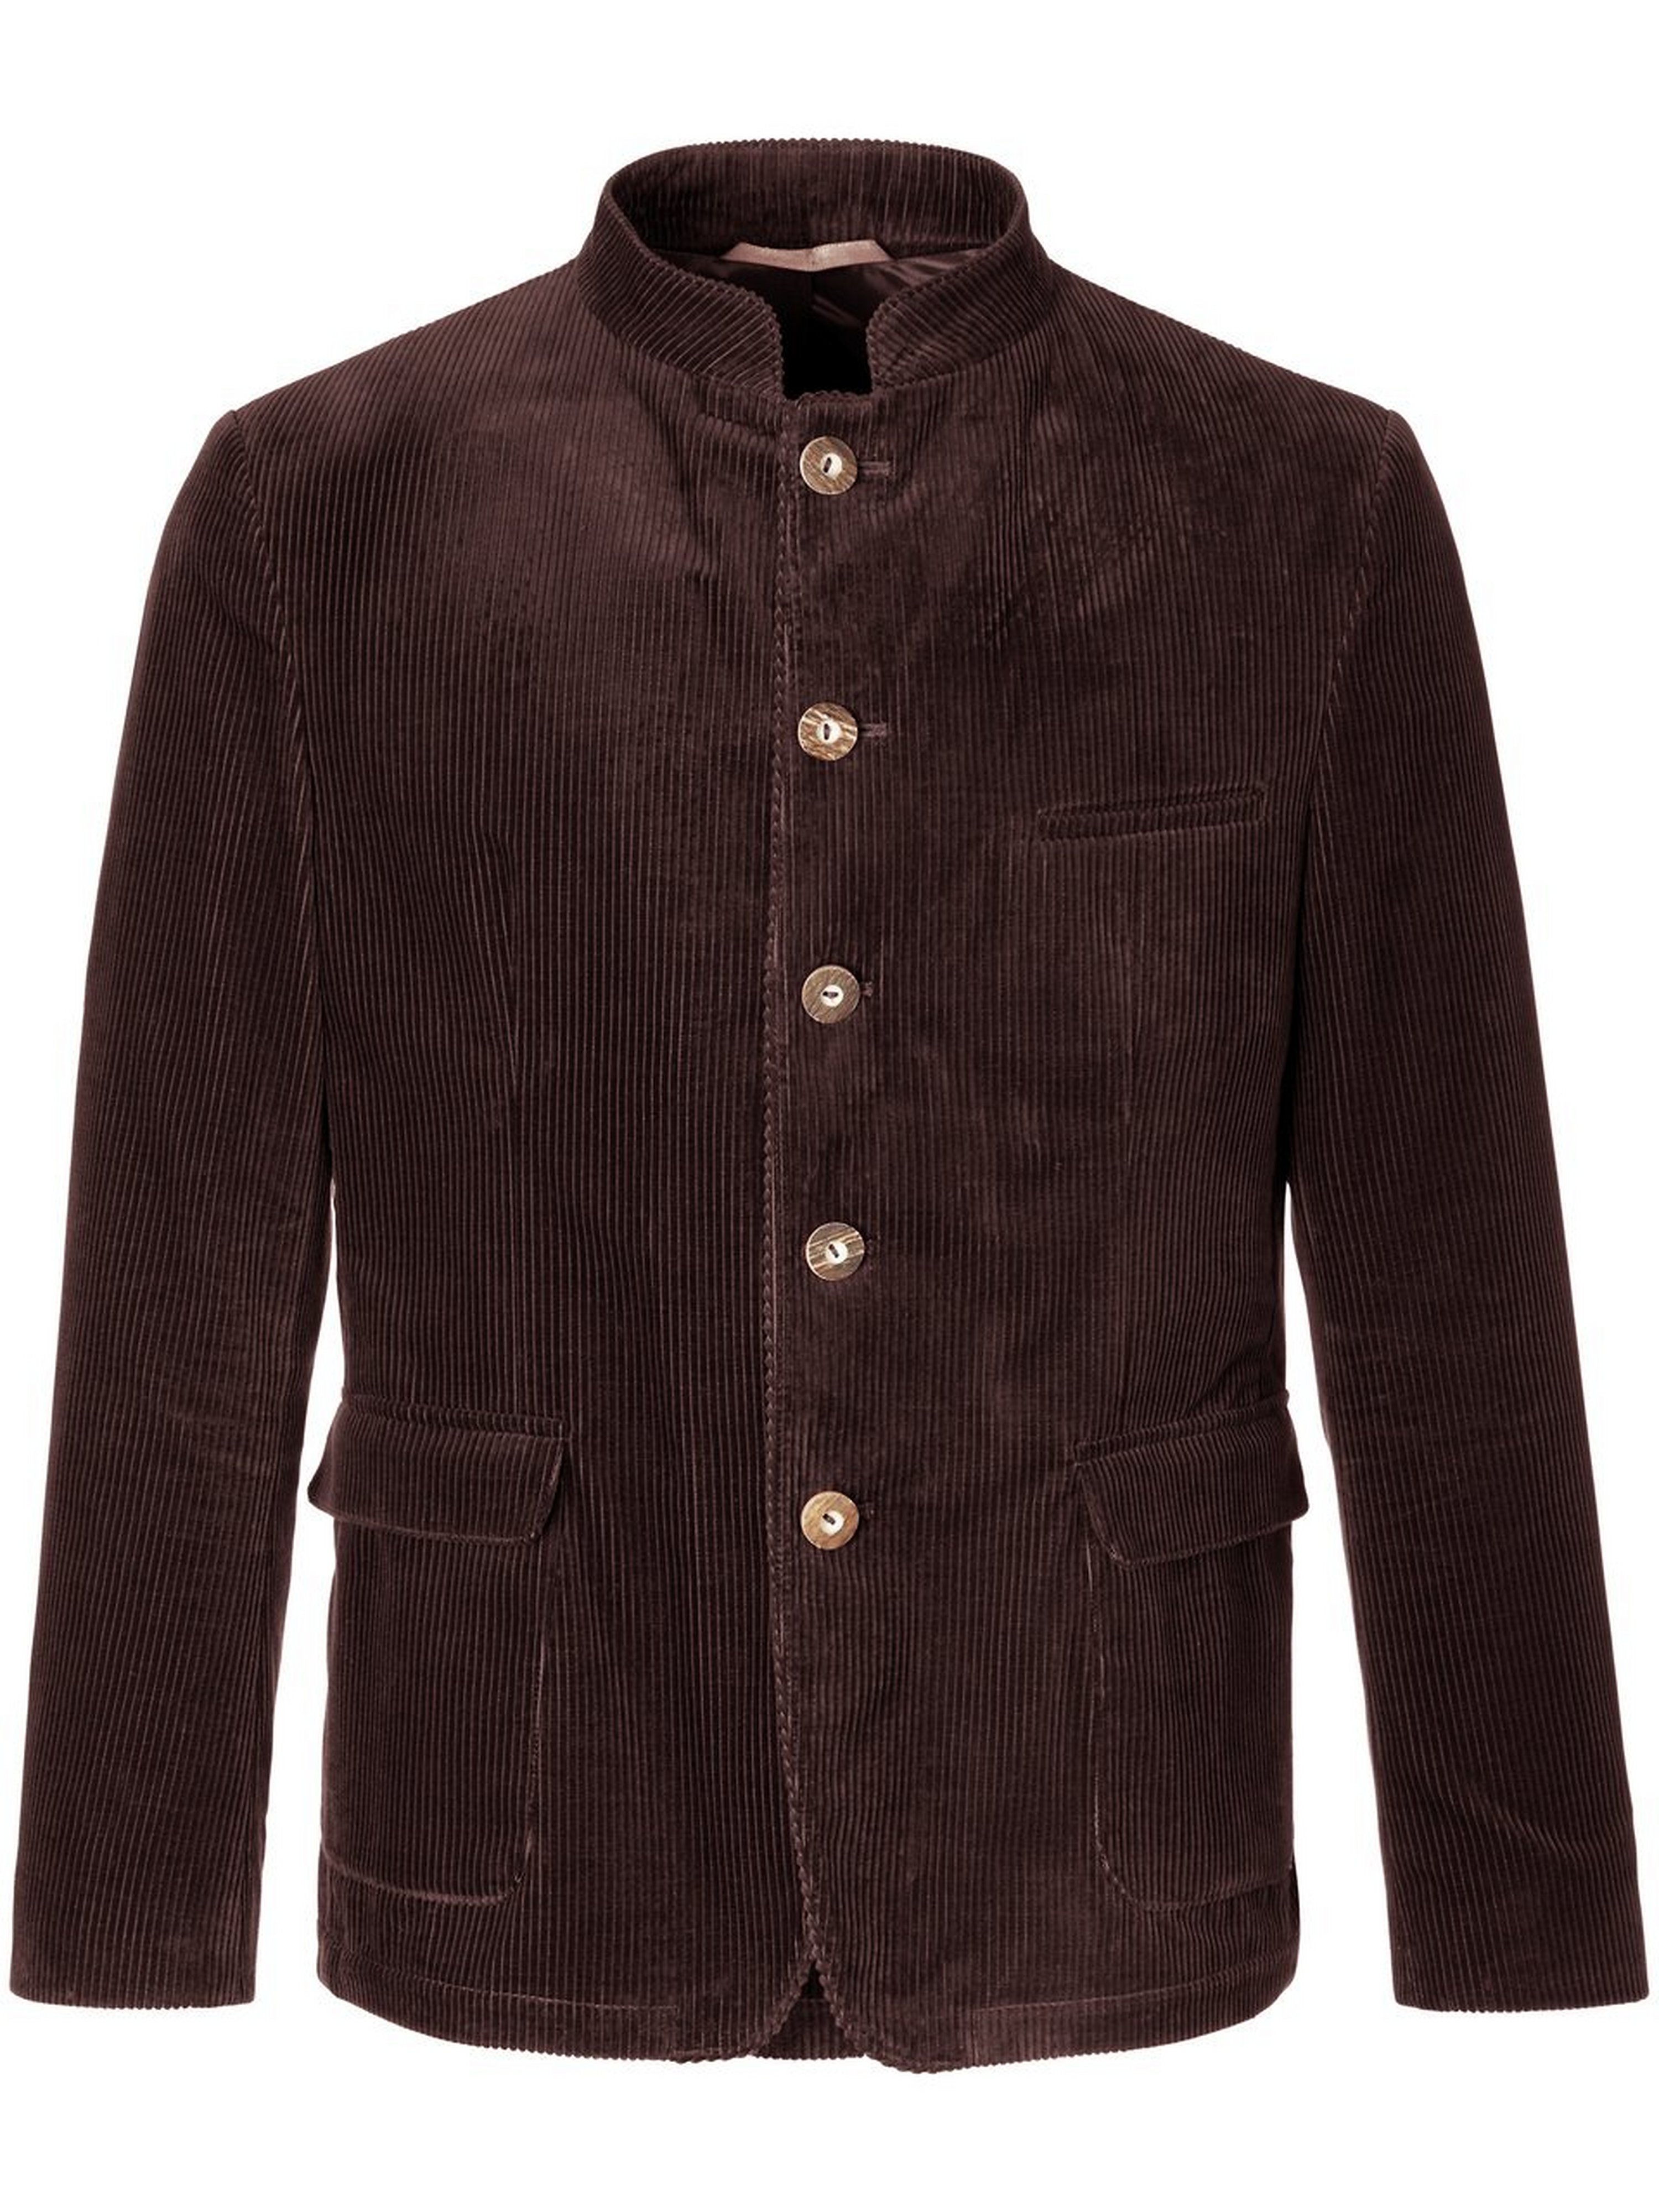 La veste velours côtelé 100% coton  Lodenfrey marron taille 27